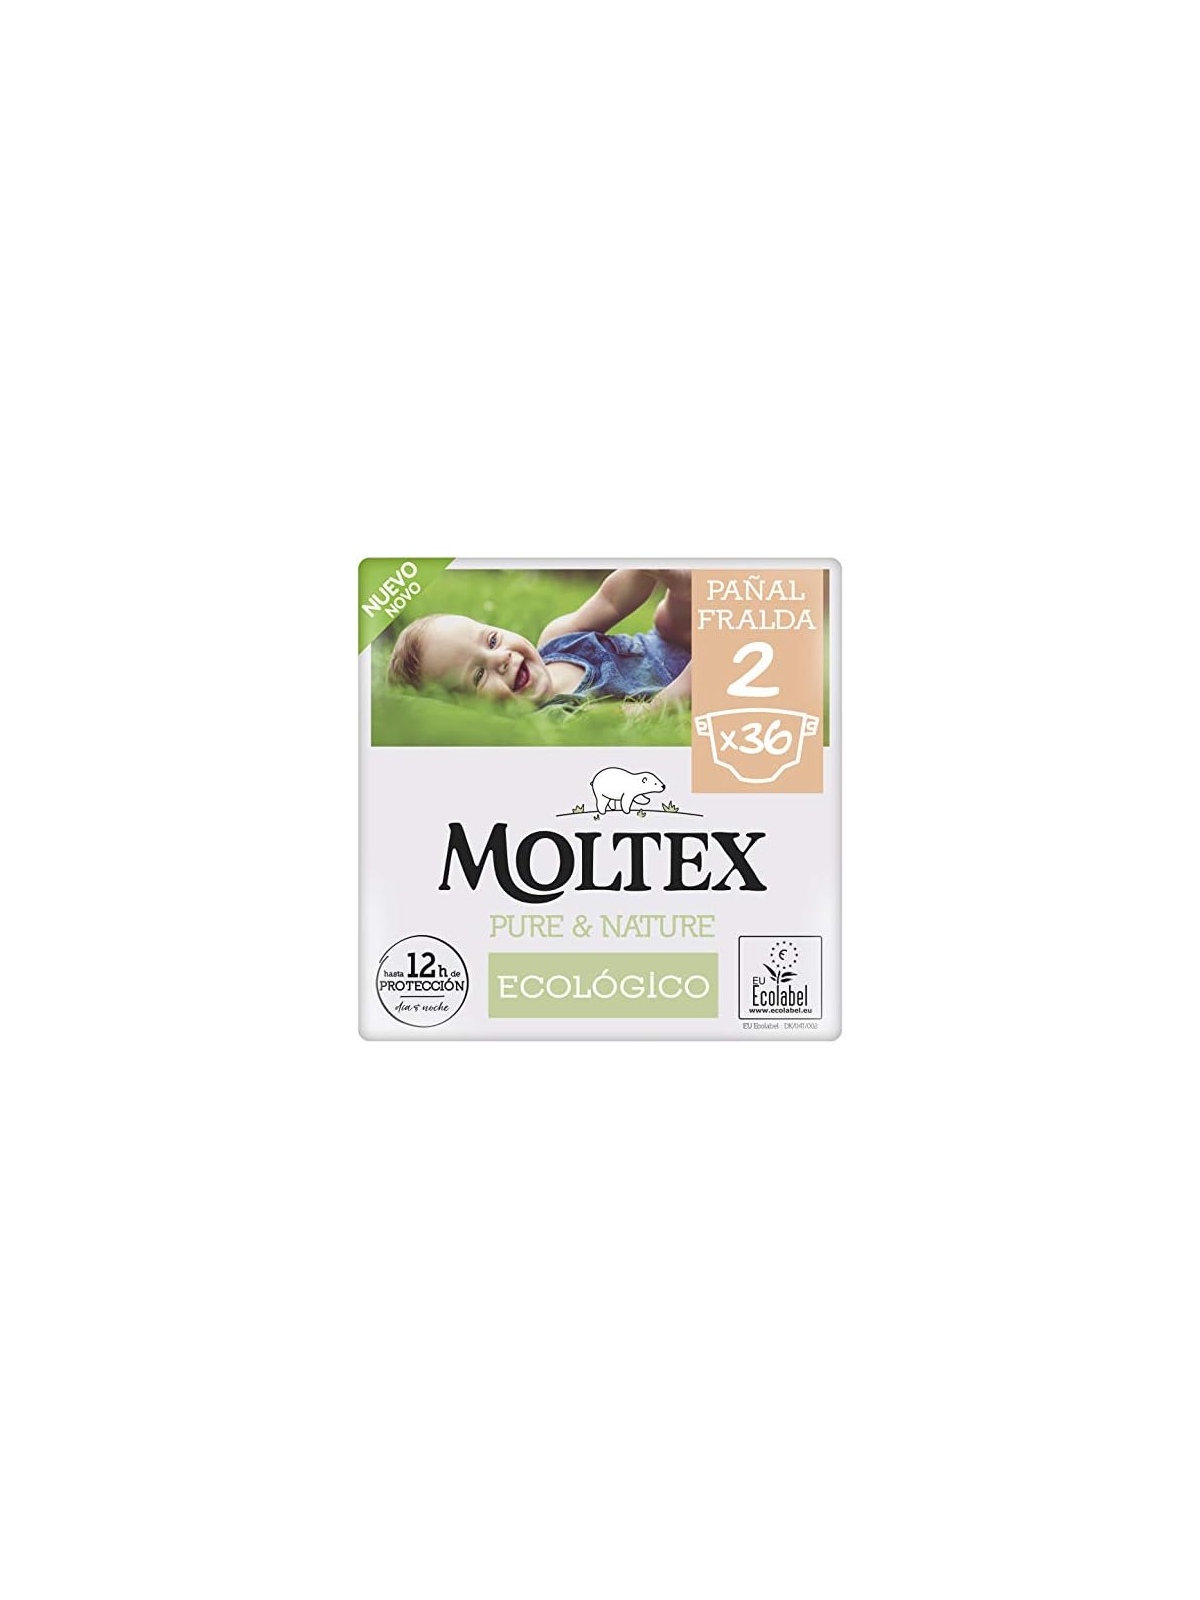 Moltex Pure & Nature Pañal infantil ecológico 3-6 kg Paquete 36 unidades